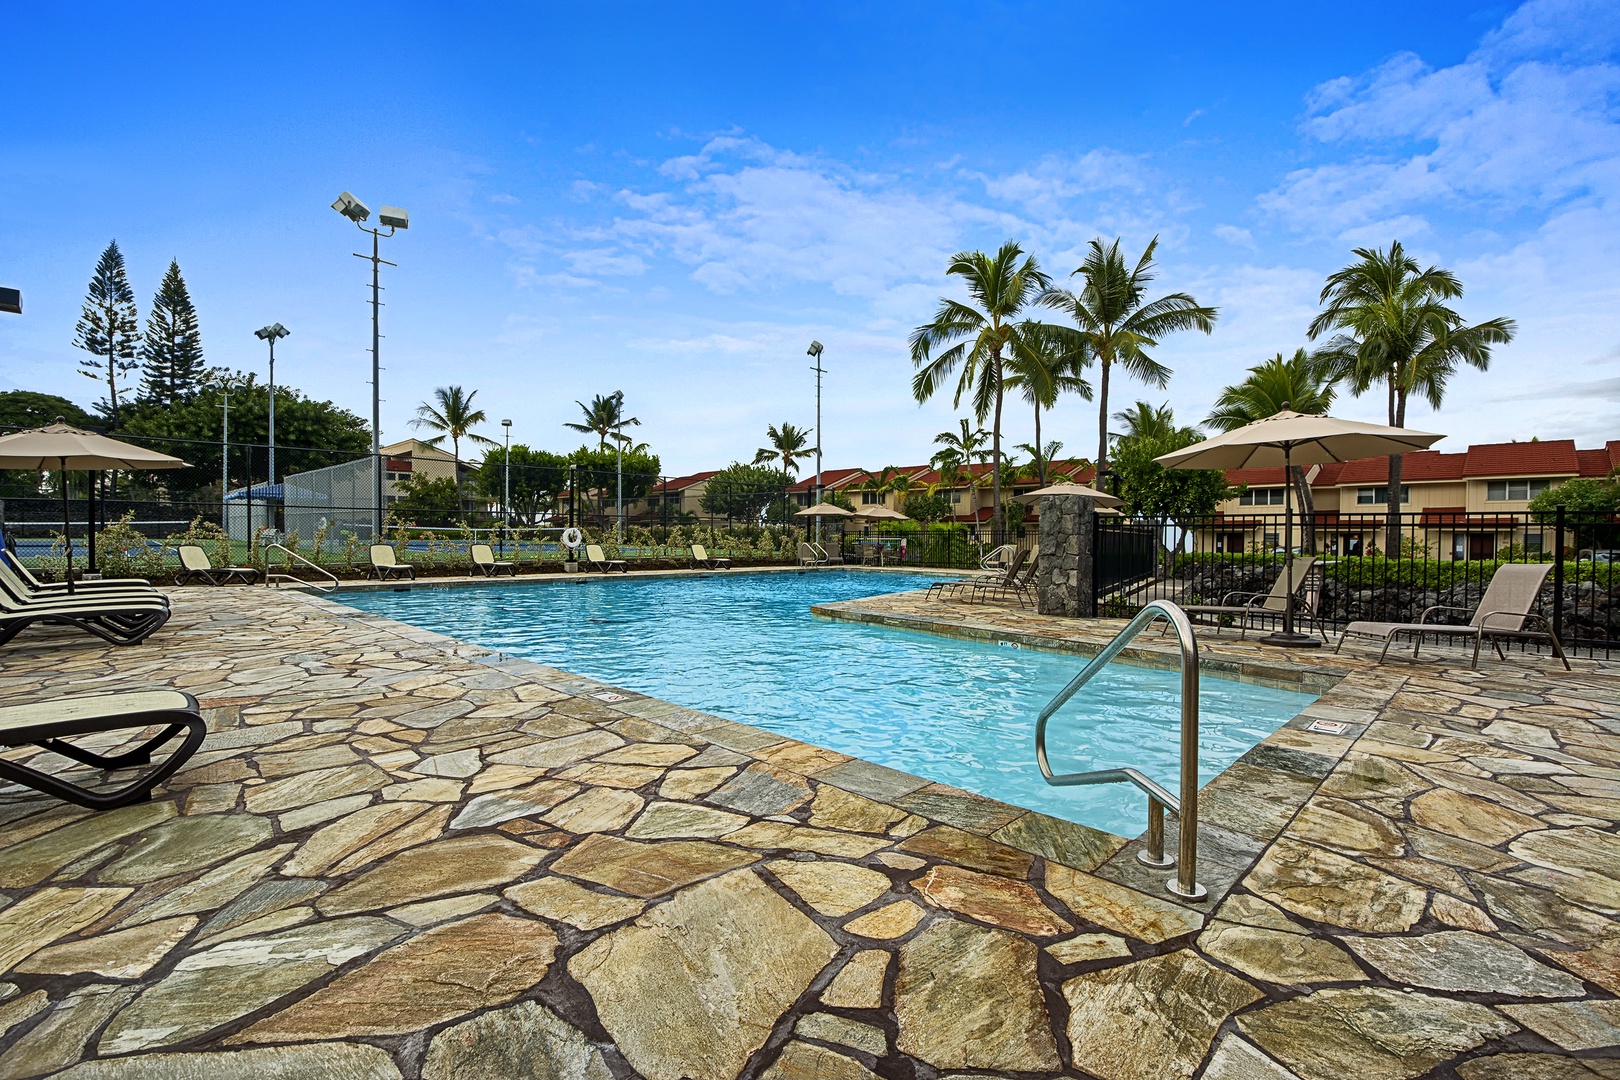 Kailua Kona Vacation Rentals, Keauhou Kona Surf & Racquet #48 - Keauhou Kona Surf & Racquet Pool